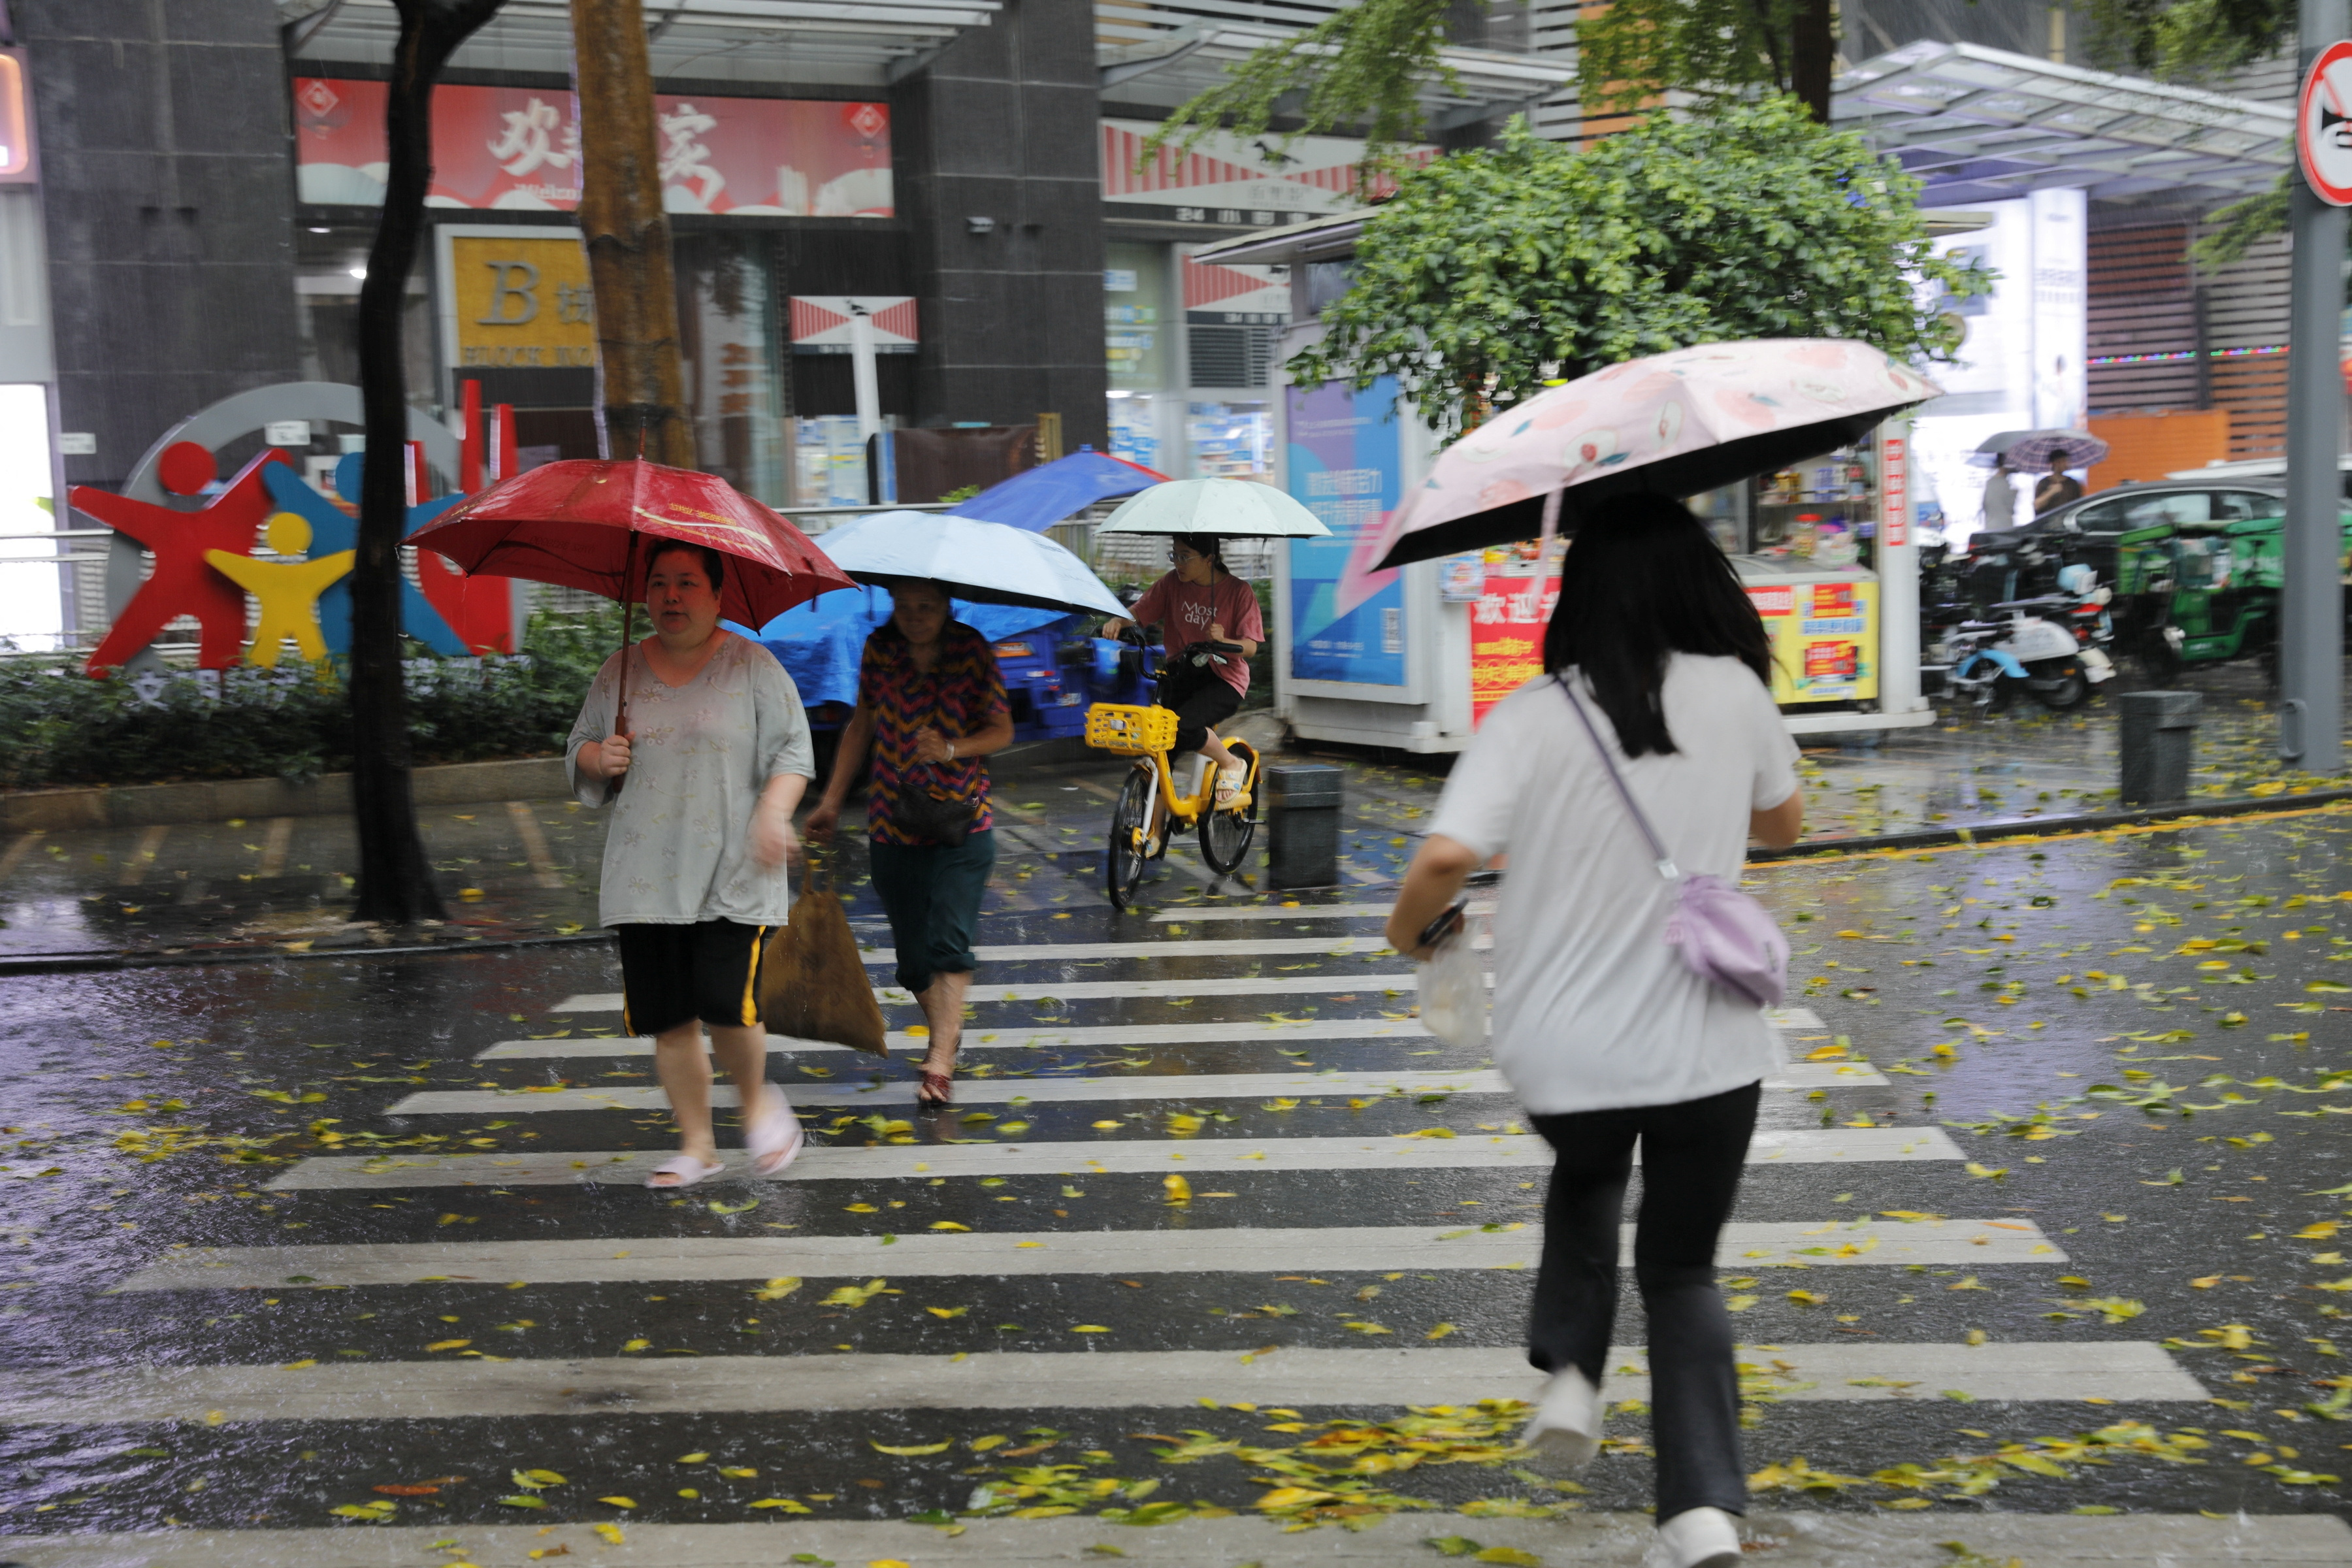 Pedestrians holding umbrellas cross a street amid a rainstorm in Shenzhen